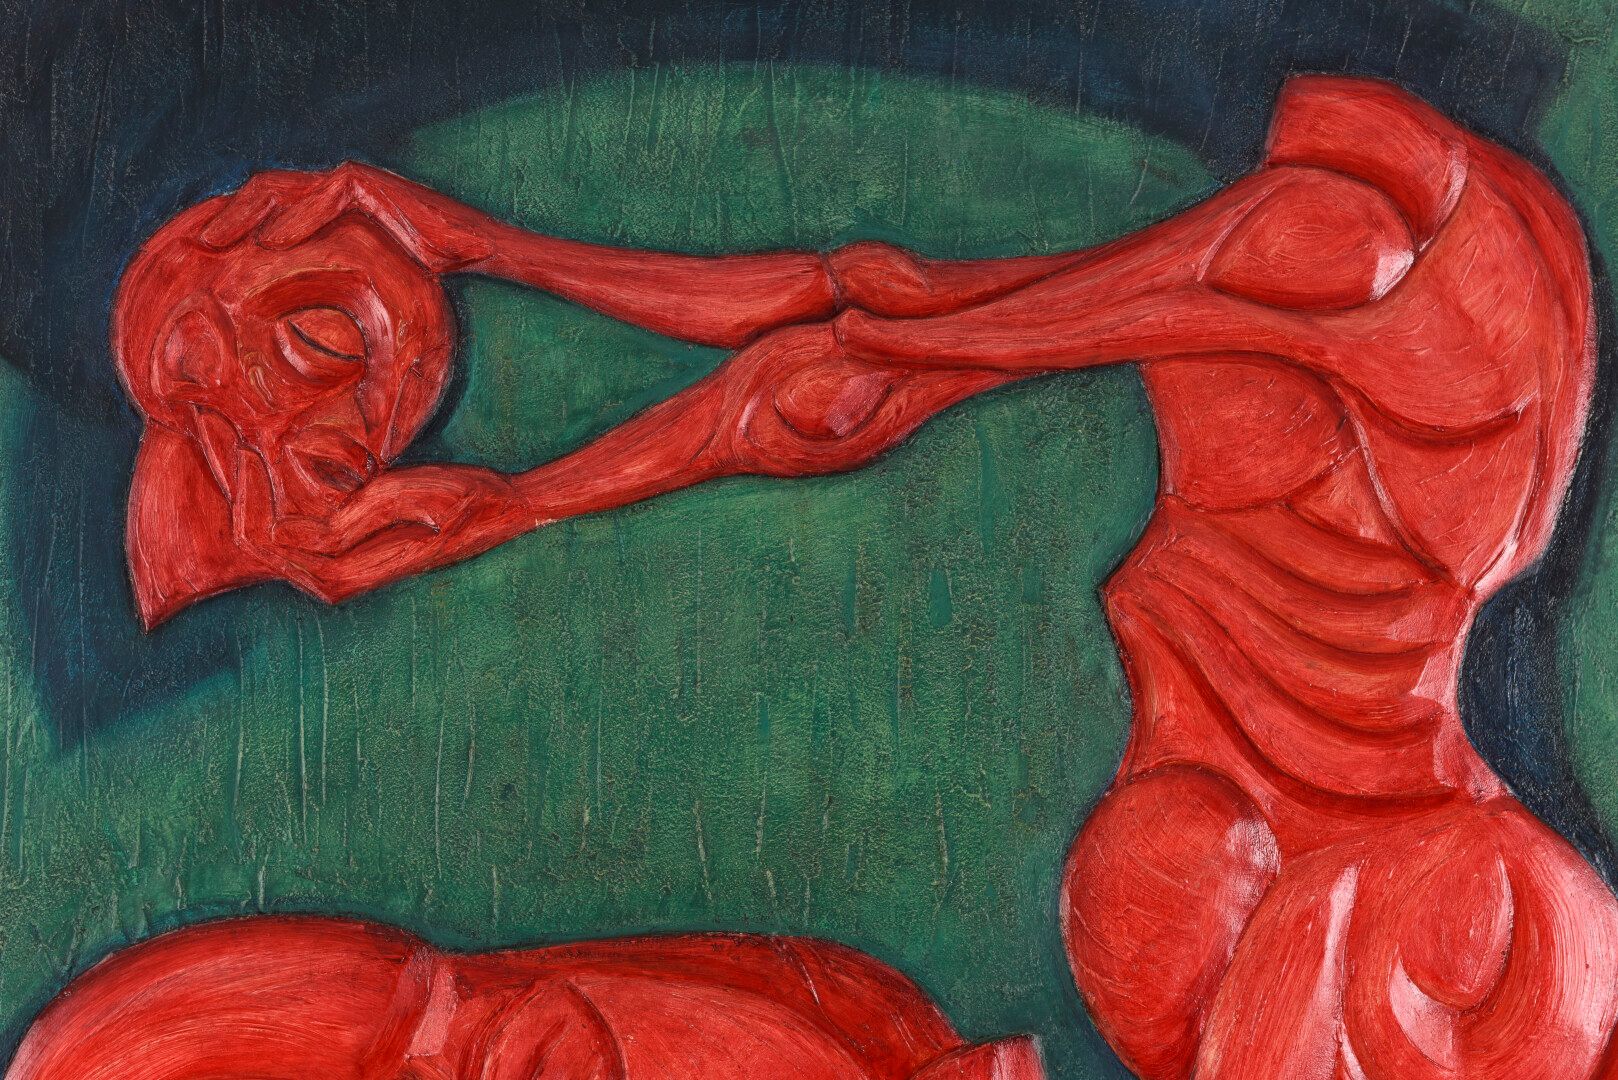 Null 文森特-冈萨雷斯(1928-2019)

地狱之歌二十八。

多色雕刻的木头。

背面有签名、标题和日期1994。

130 x 100 cm